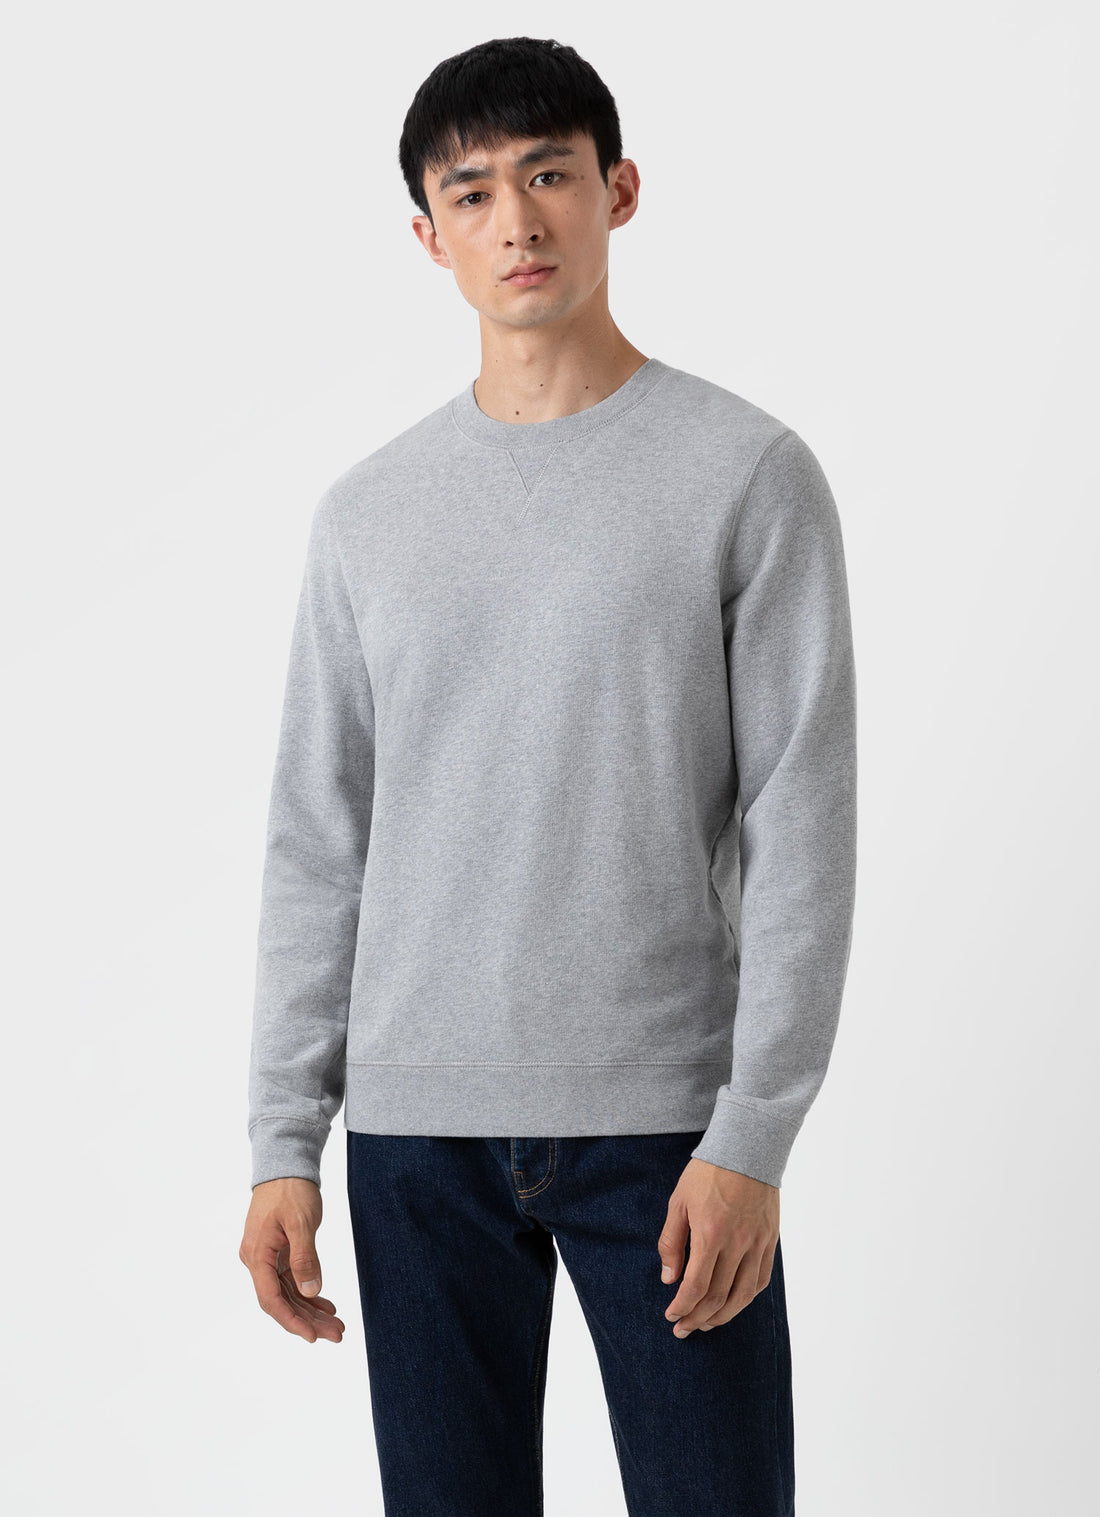 Men's Sweatshirts & Sweatpants